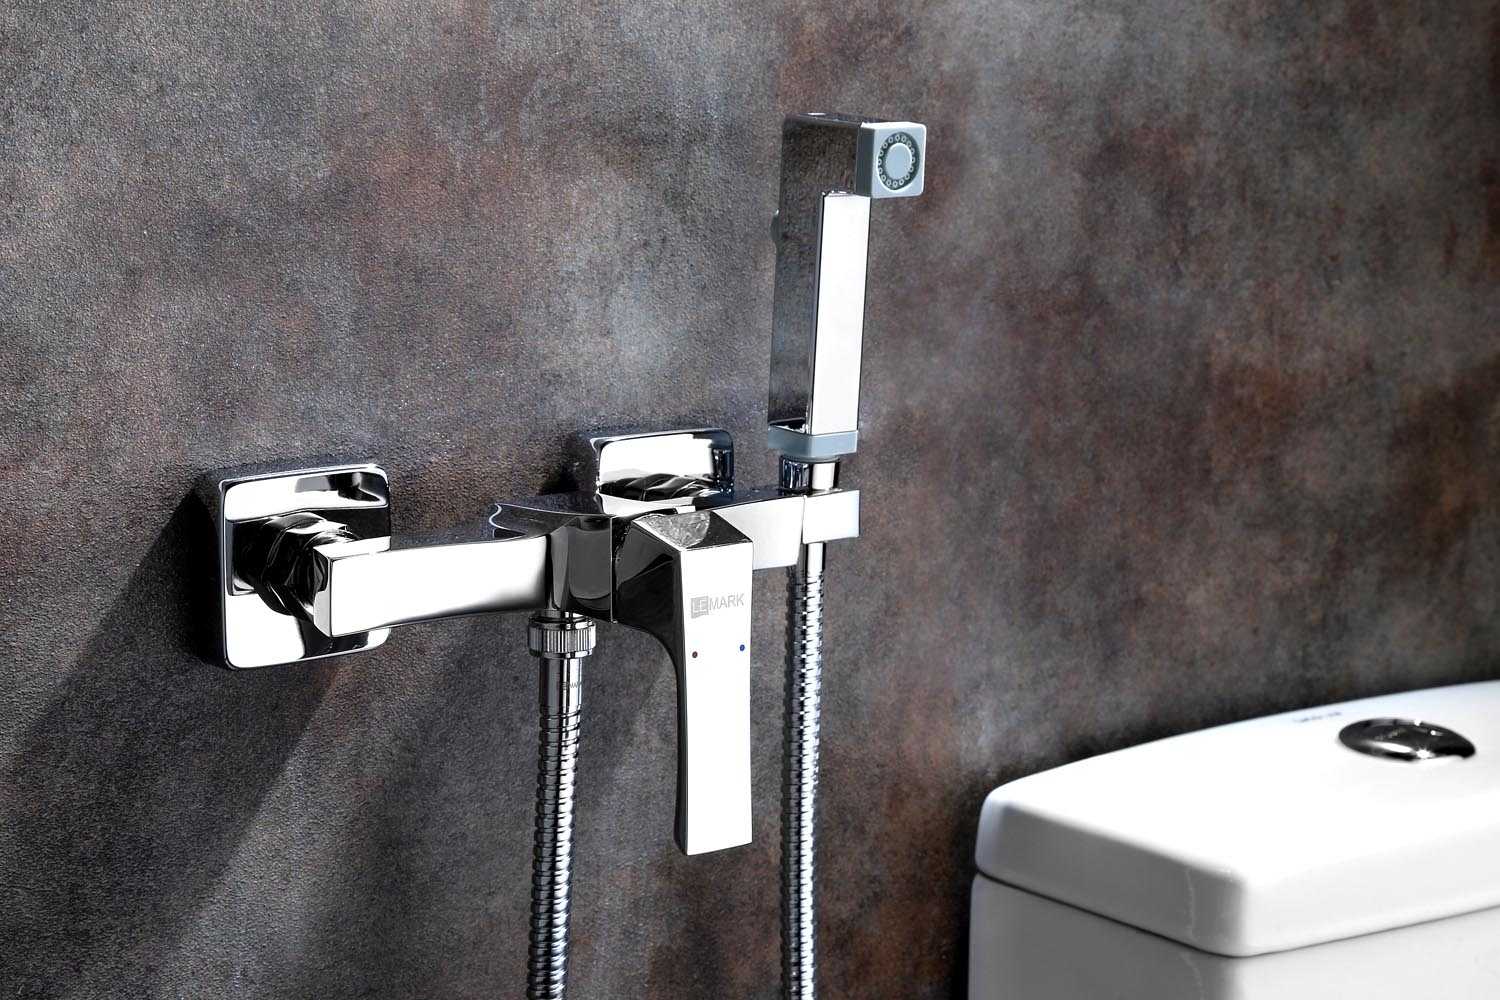 Гигиенический душ для унитаза со смесителем в туалете с термостатом, что это такое лейка интимный душ